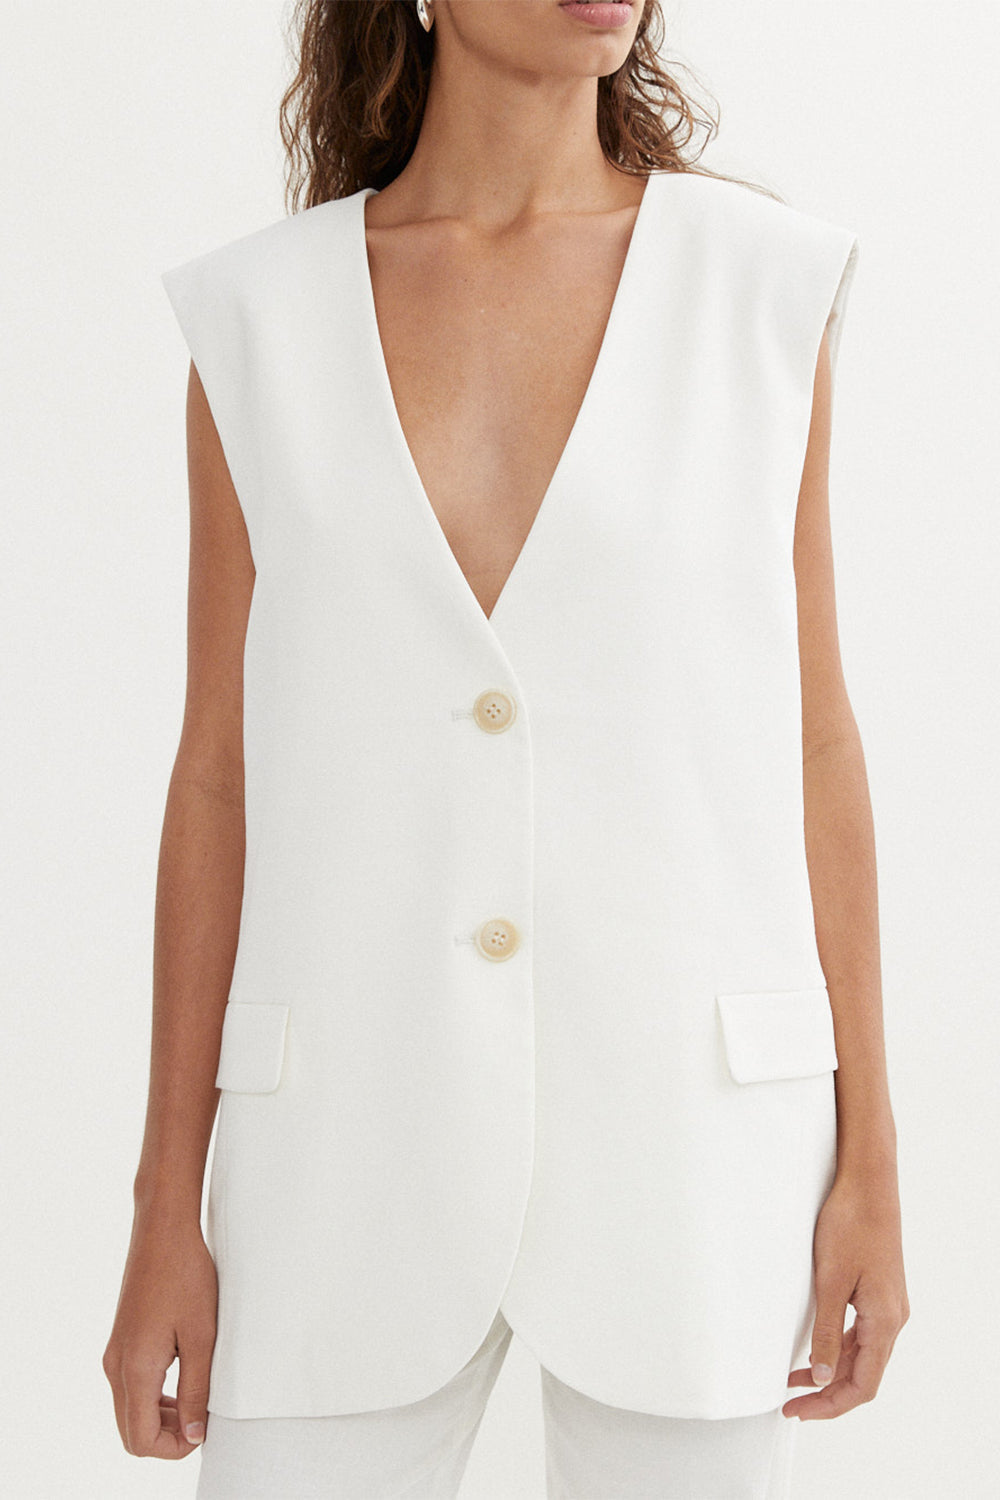 Halston Vest in White by BLANCA